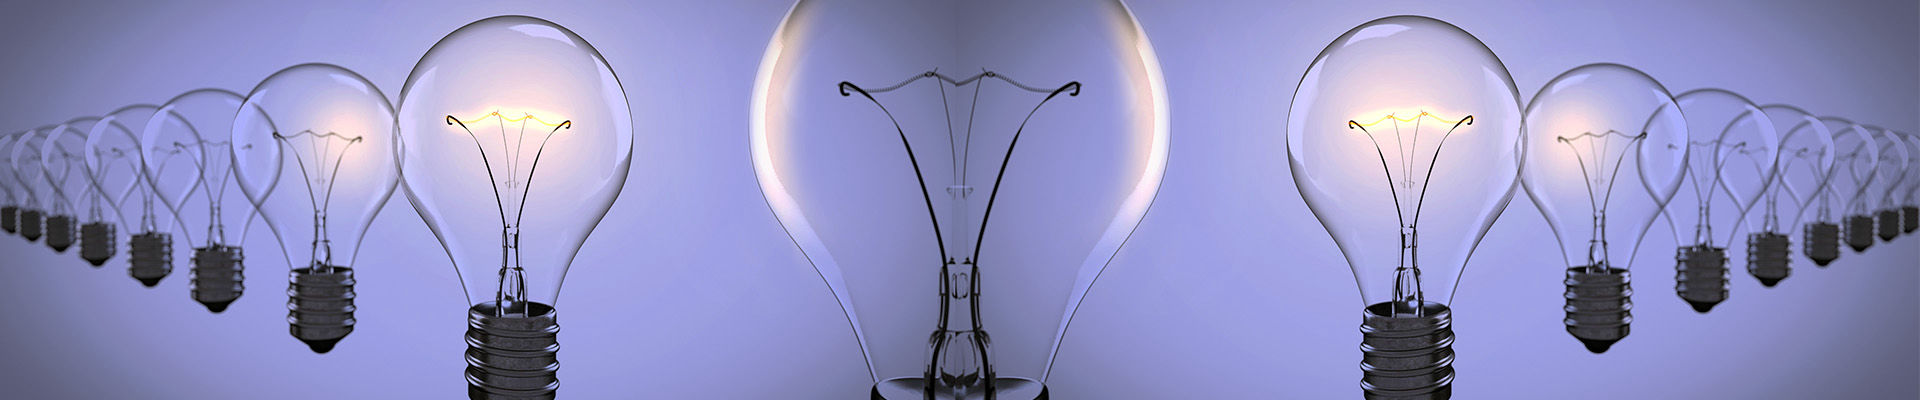 https://pixabay.com/de/photos/glühlampen-gewählten-birne-licht-1875384/